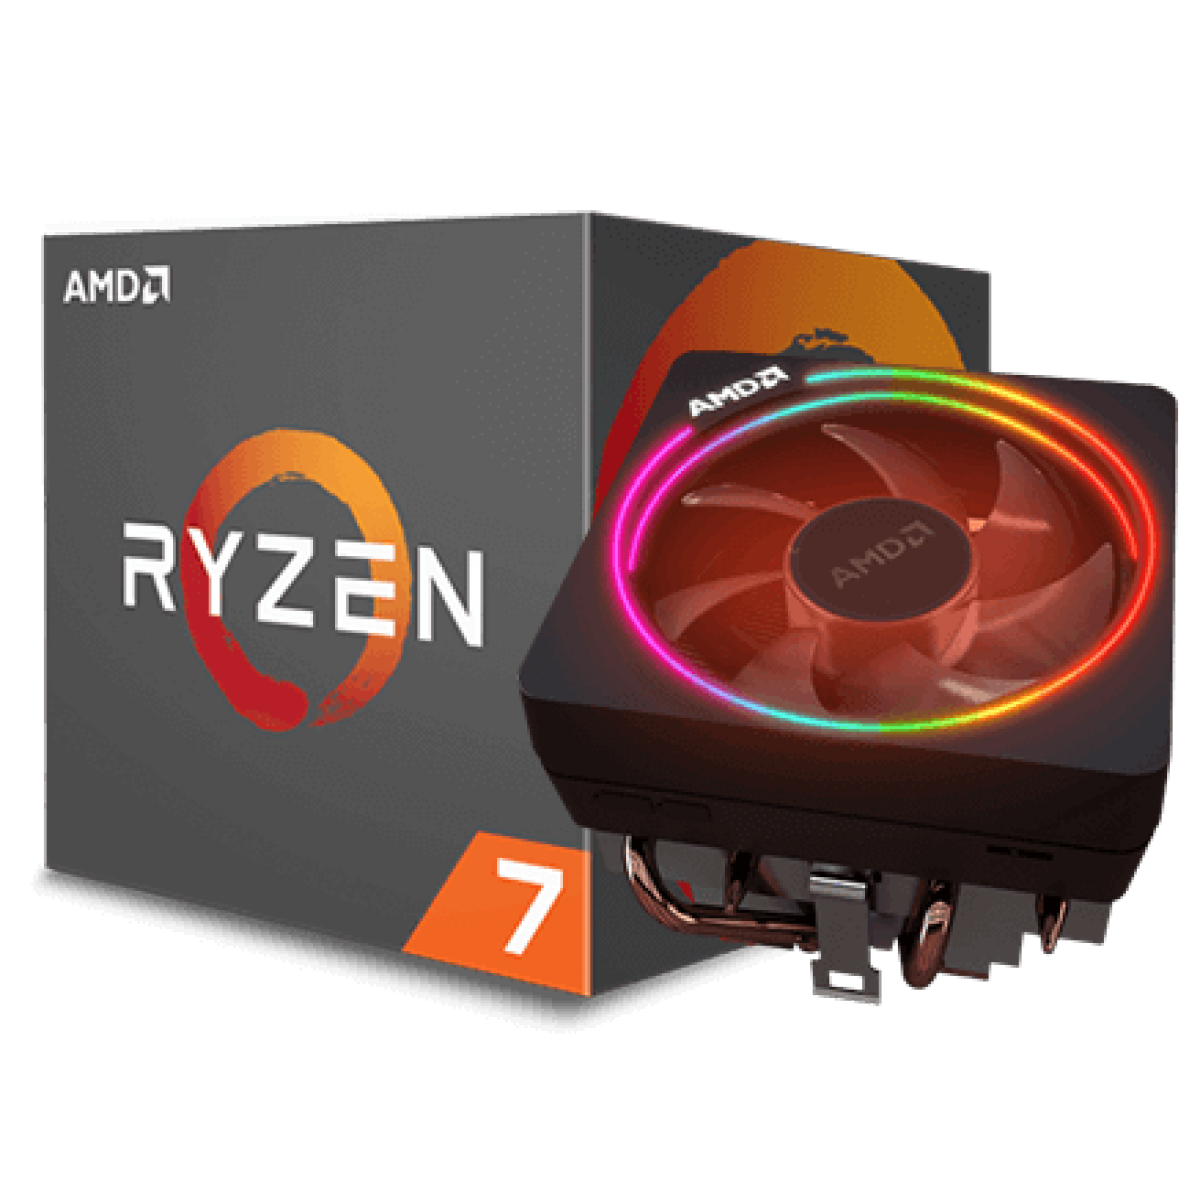 Кулер райзен 5. AMD Ryzen 7 2700x (Box). AMD Ryzen 7 5800x Box кулер. AMD 7 2700x кулер. AМD Ryzen 7 2700 8/16.